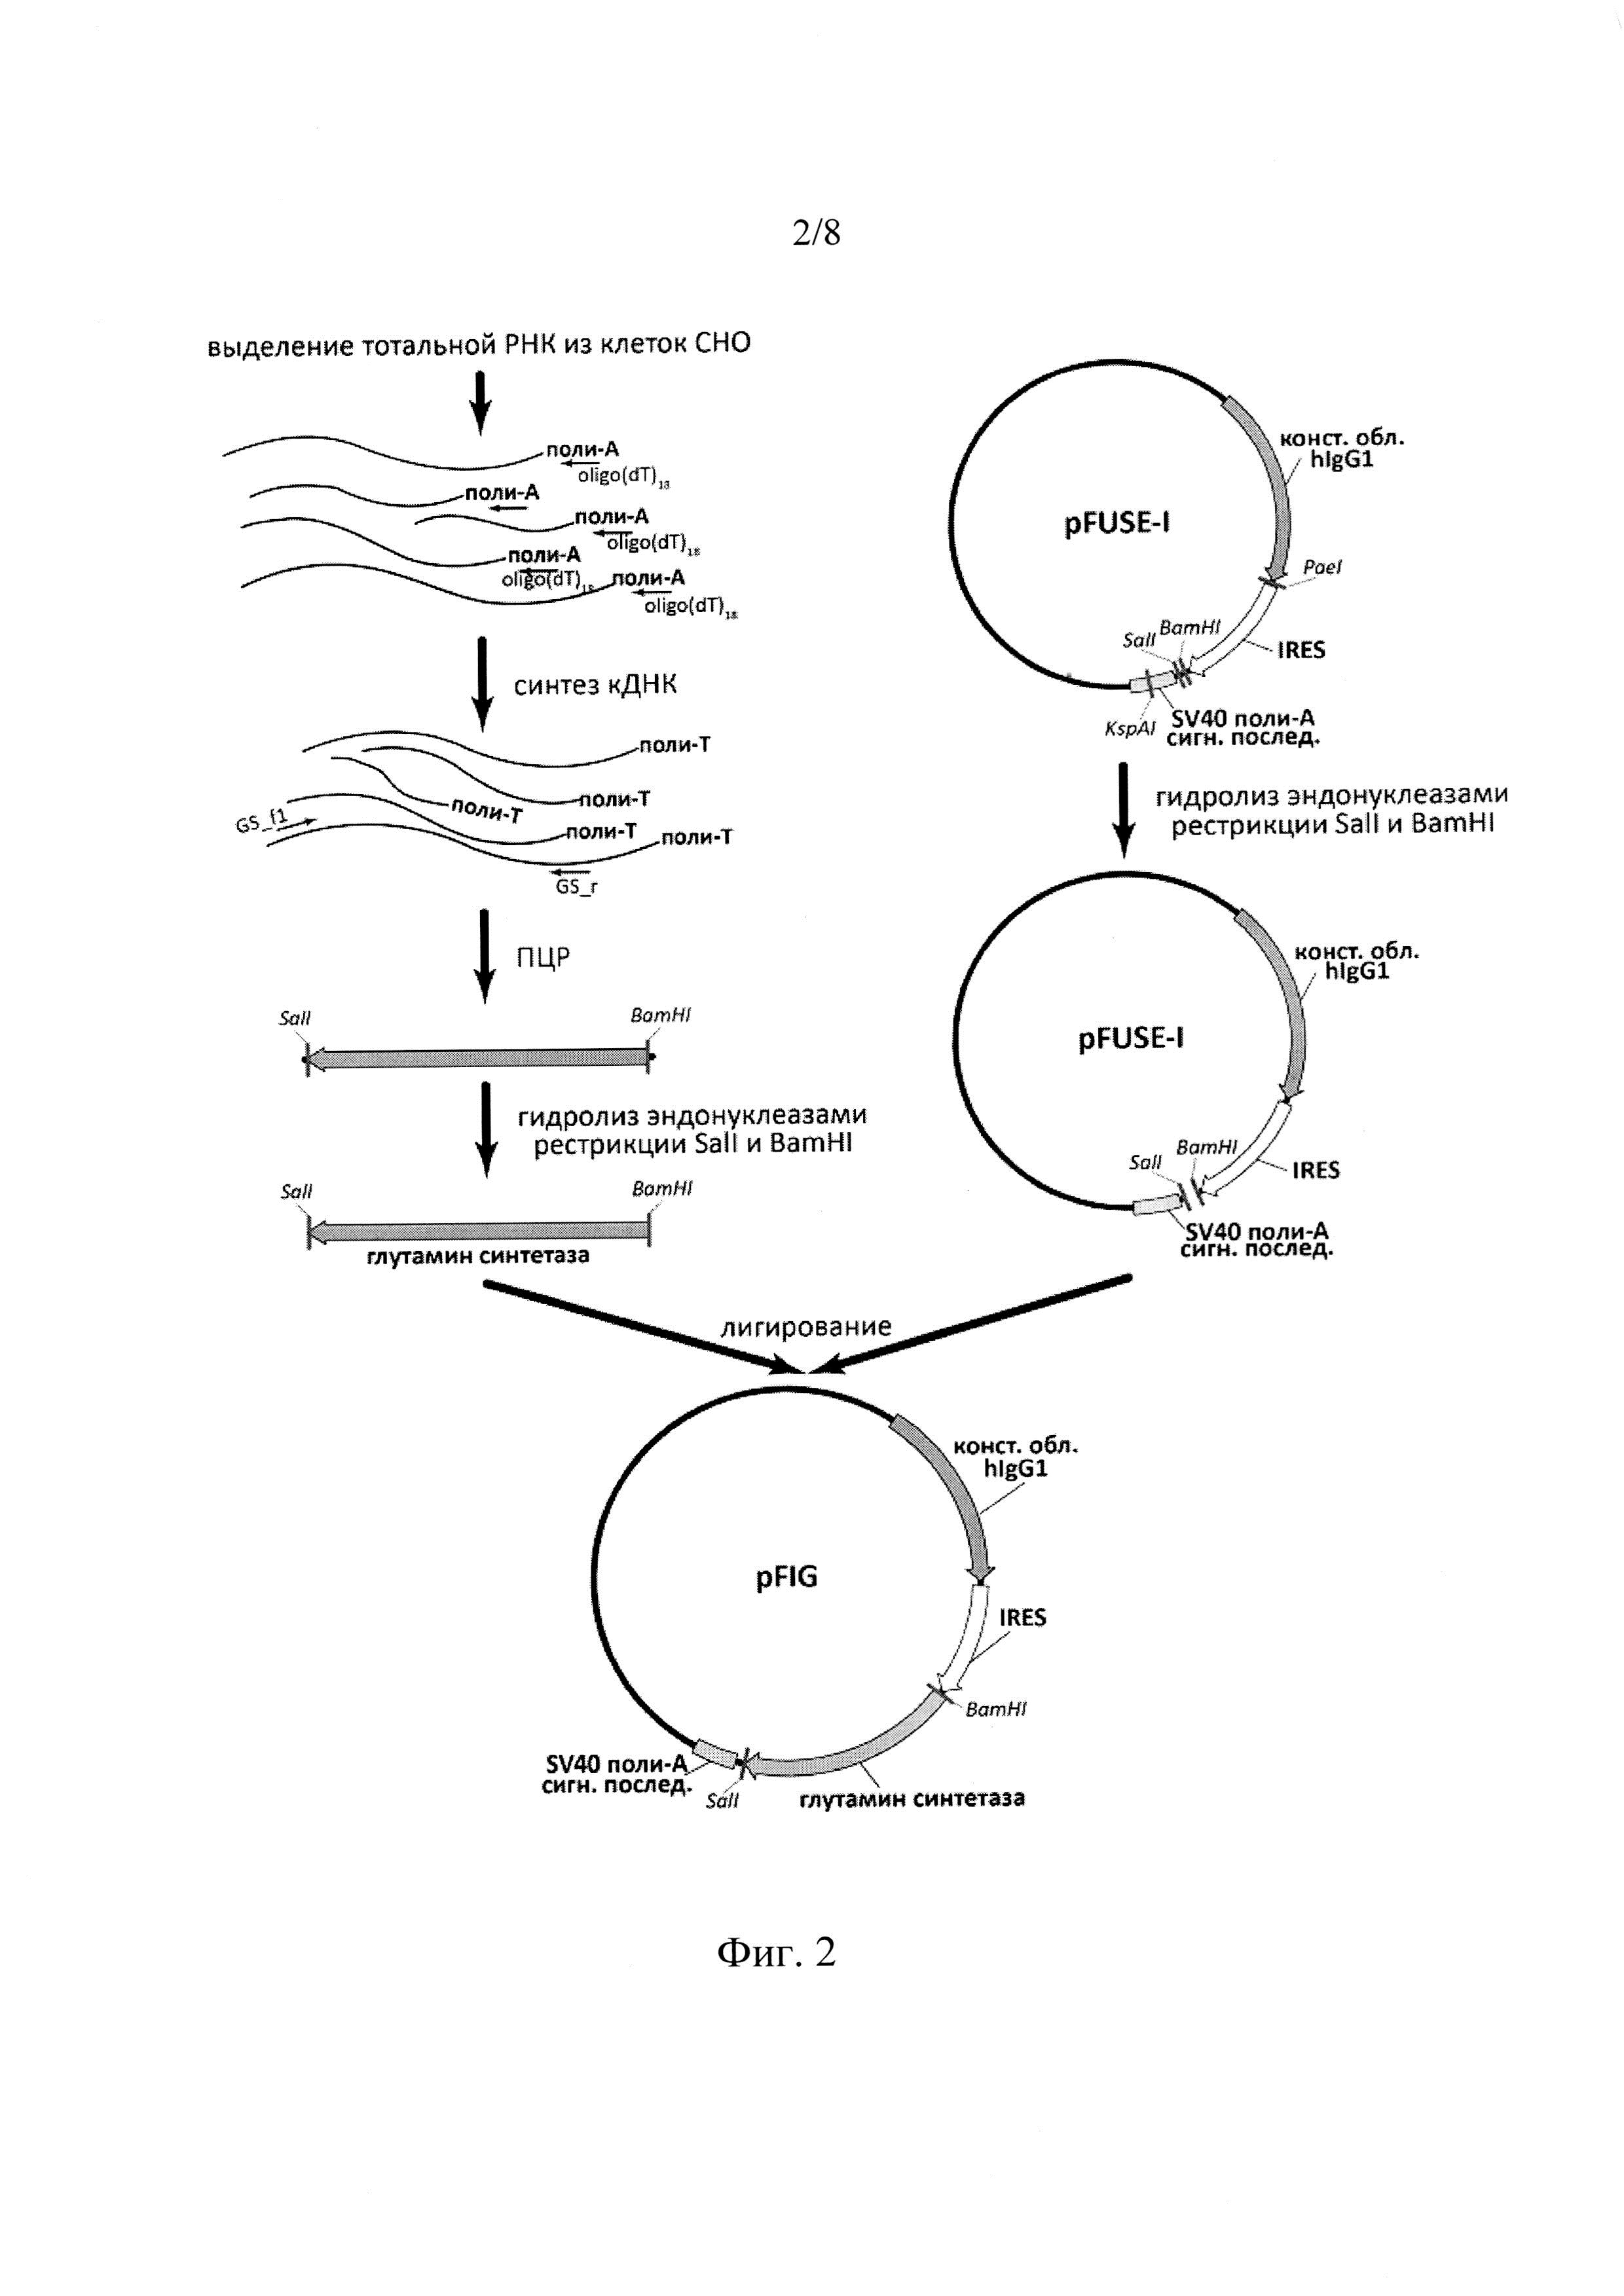 Экспрессионный плазмидный вектор для экспрессии активной формы TNFR1-Fc и способ получения рекомбинантного белка